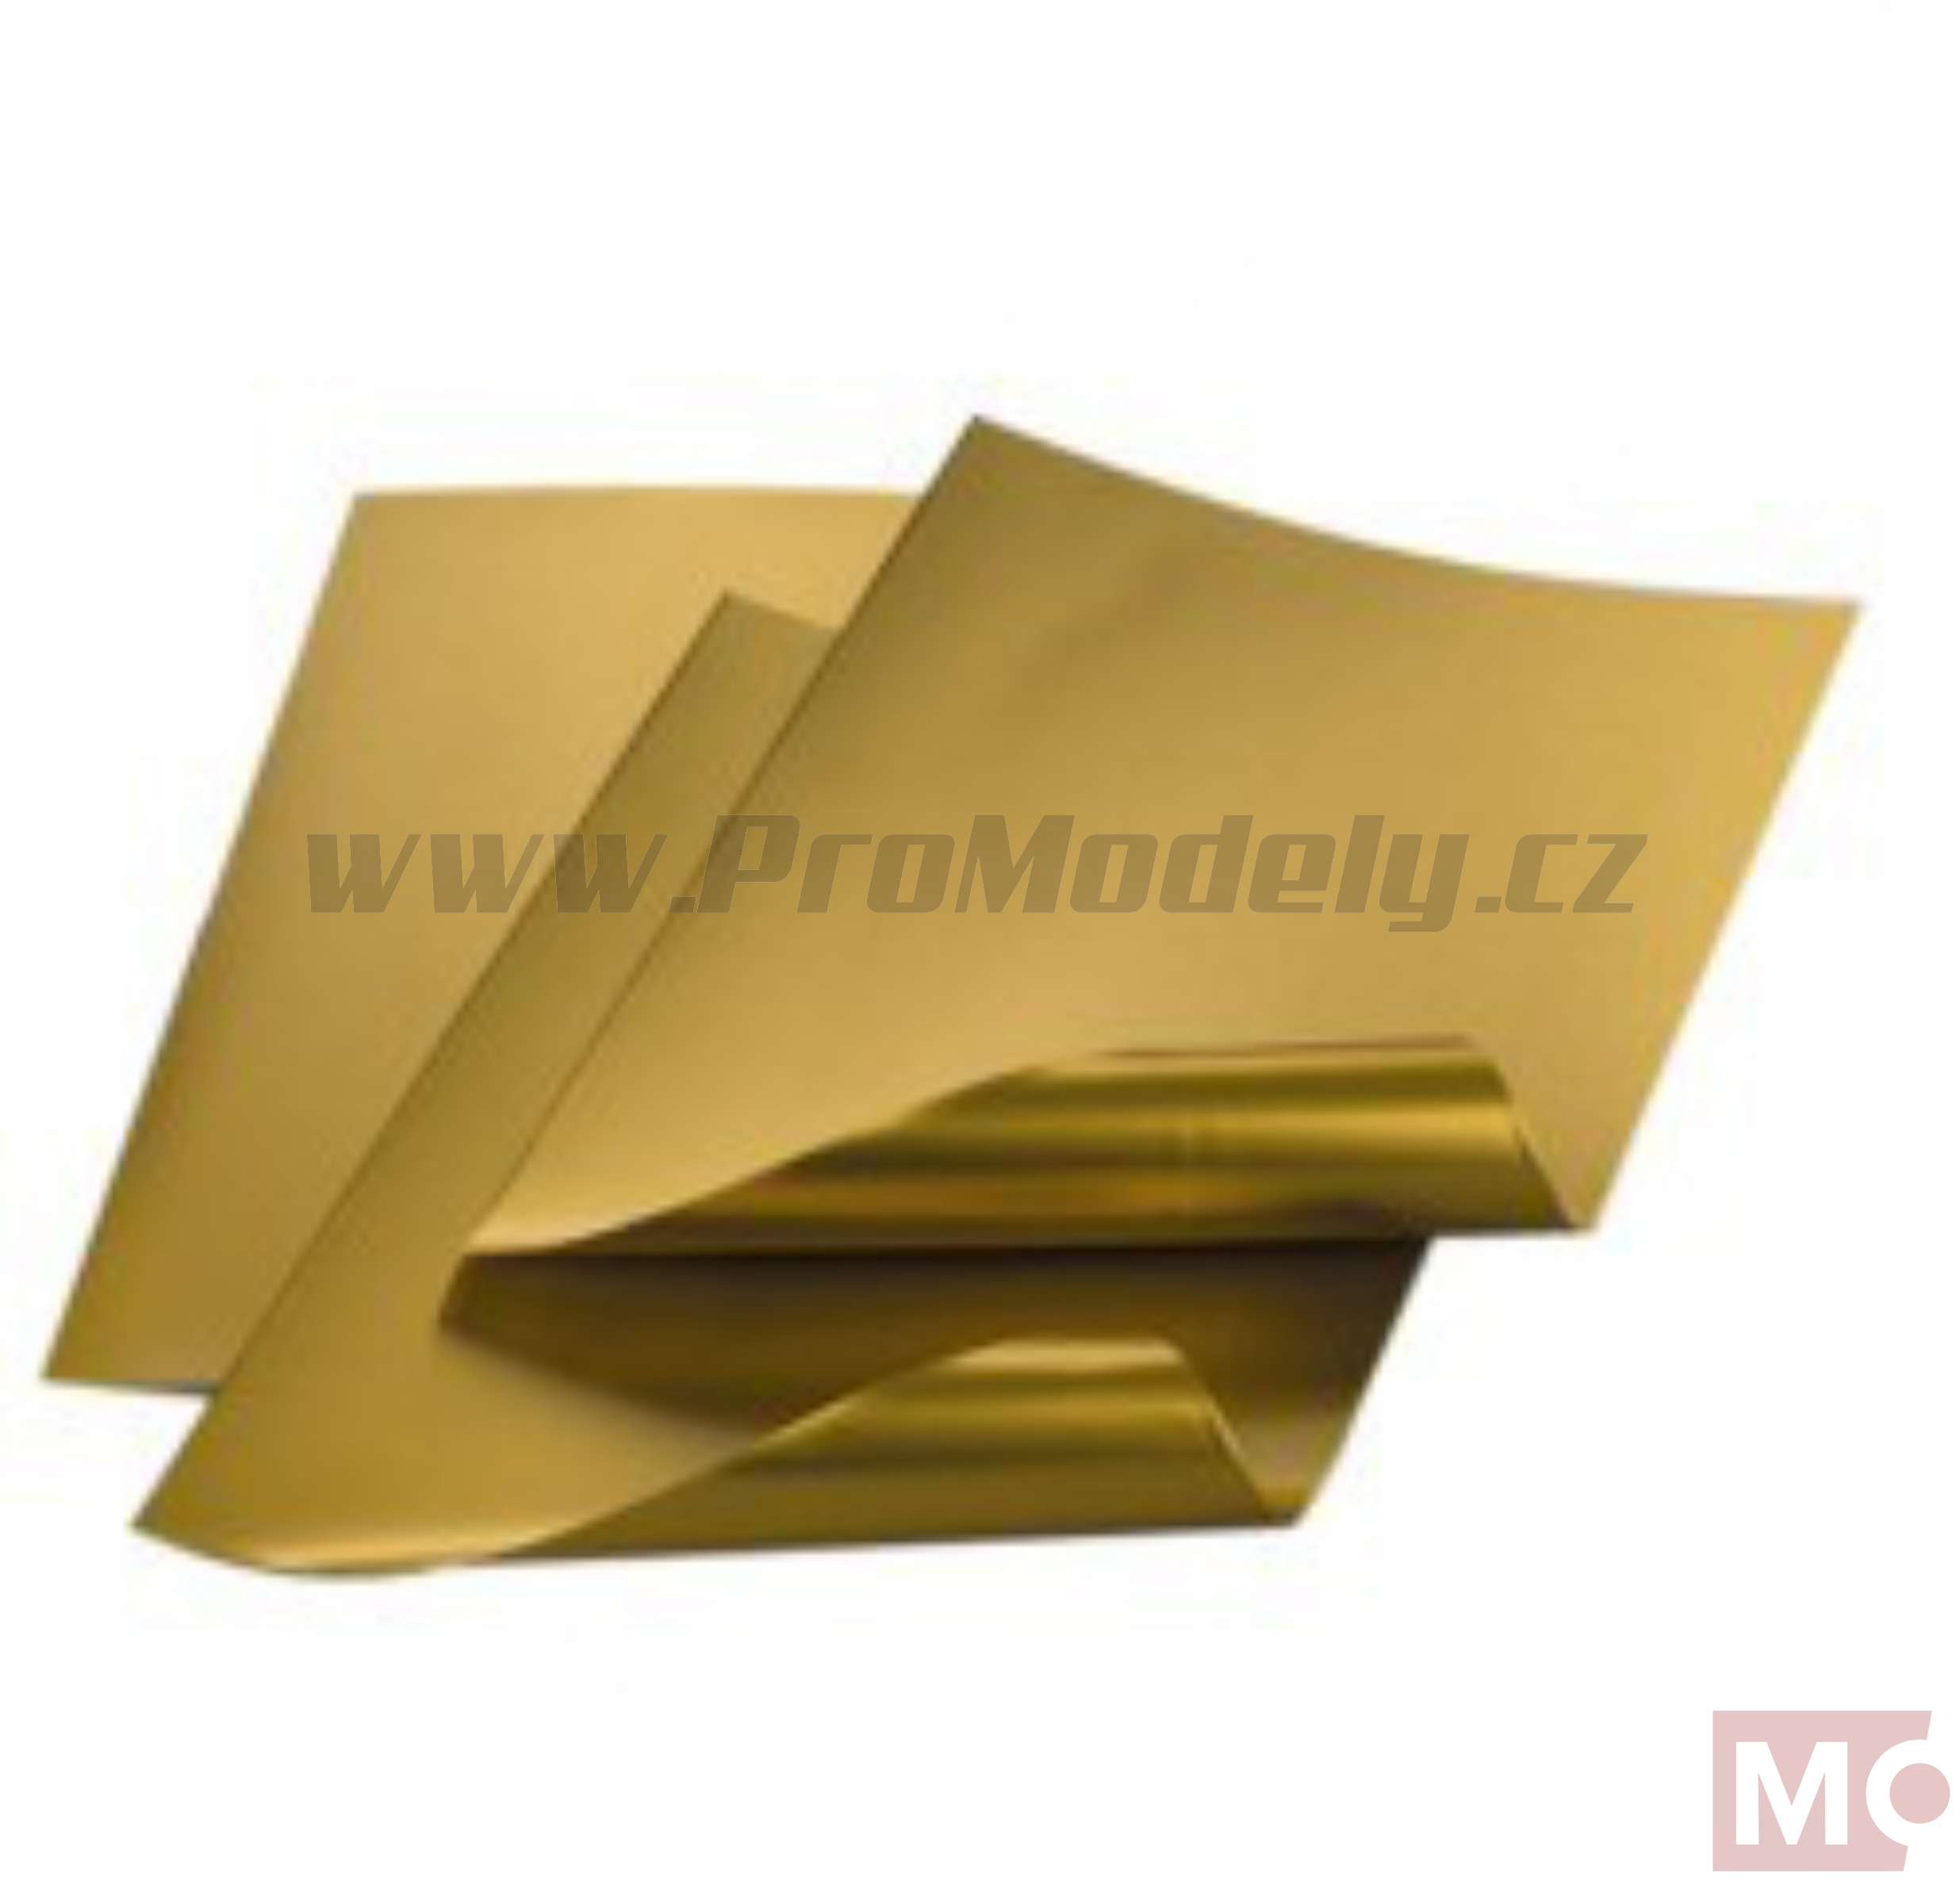 Hliníková fólie zlatá, 20x30cm / 0,15mm